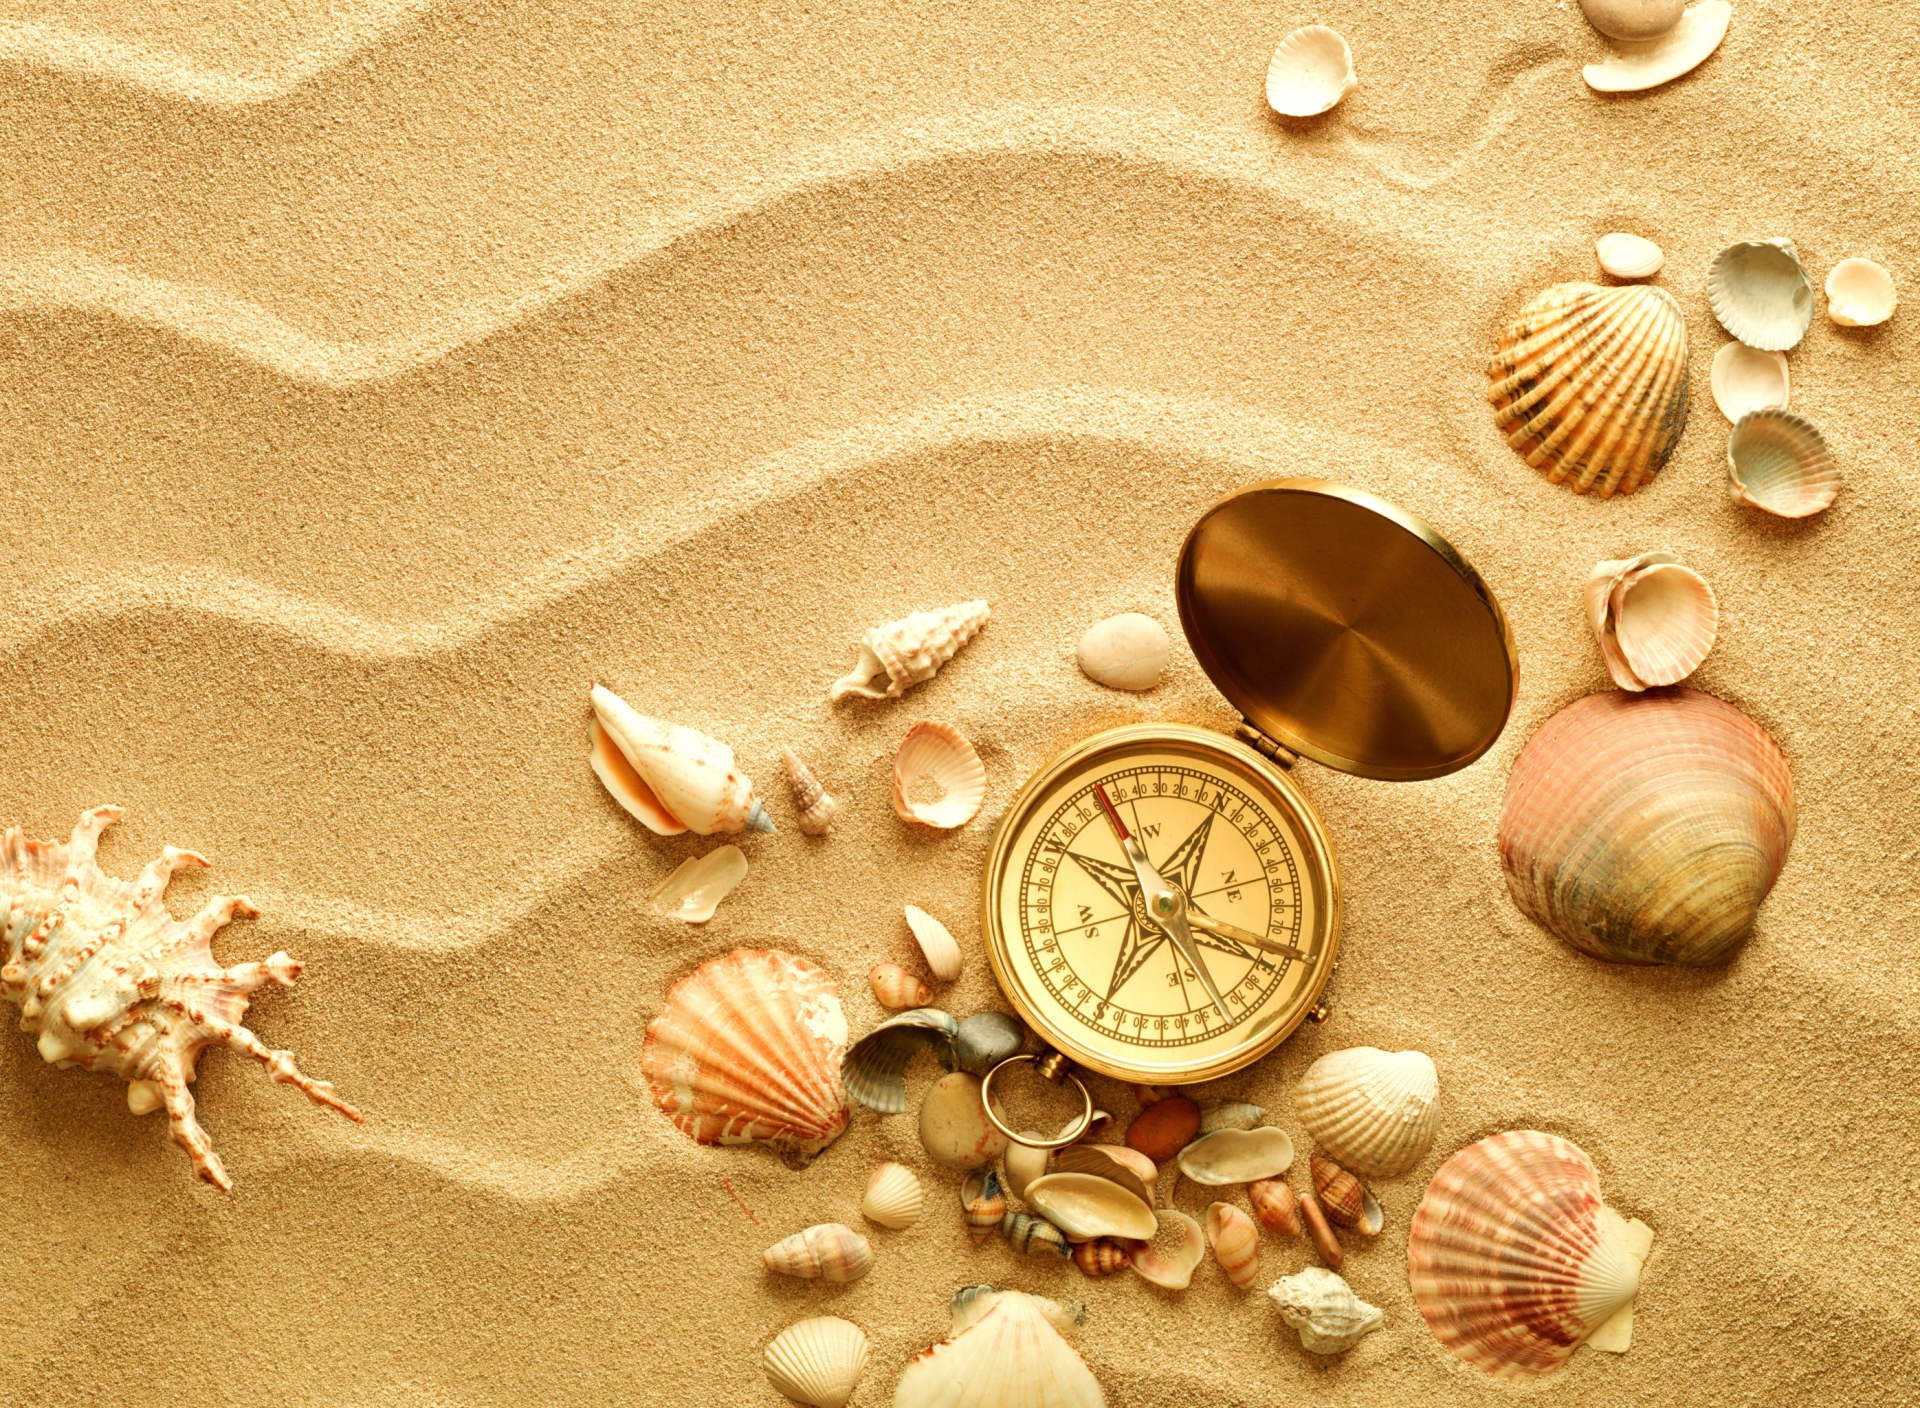 Обои Compass And Shells On Sand 1920x1408